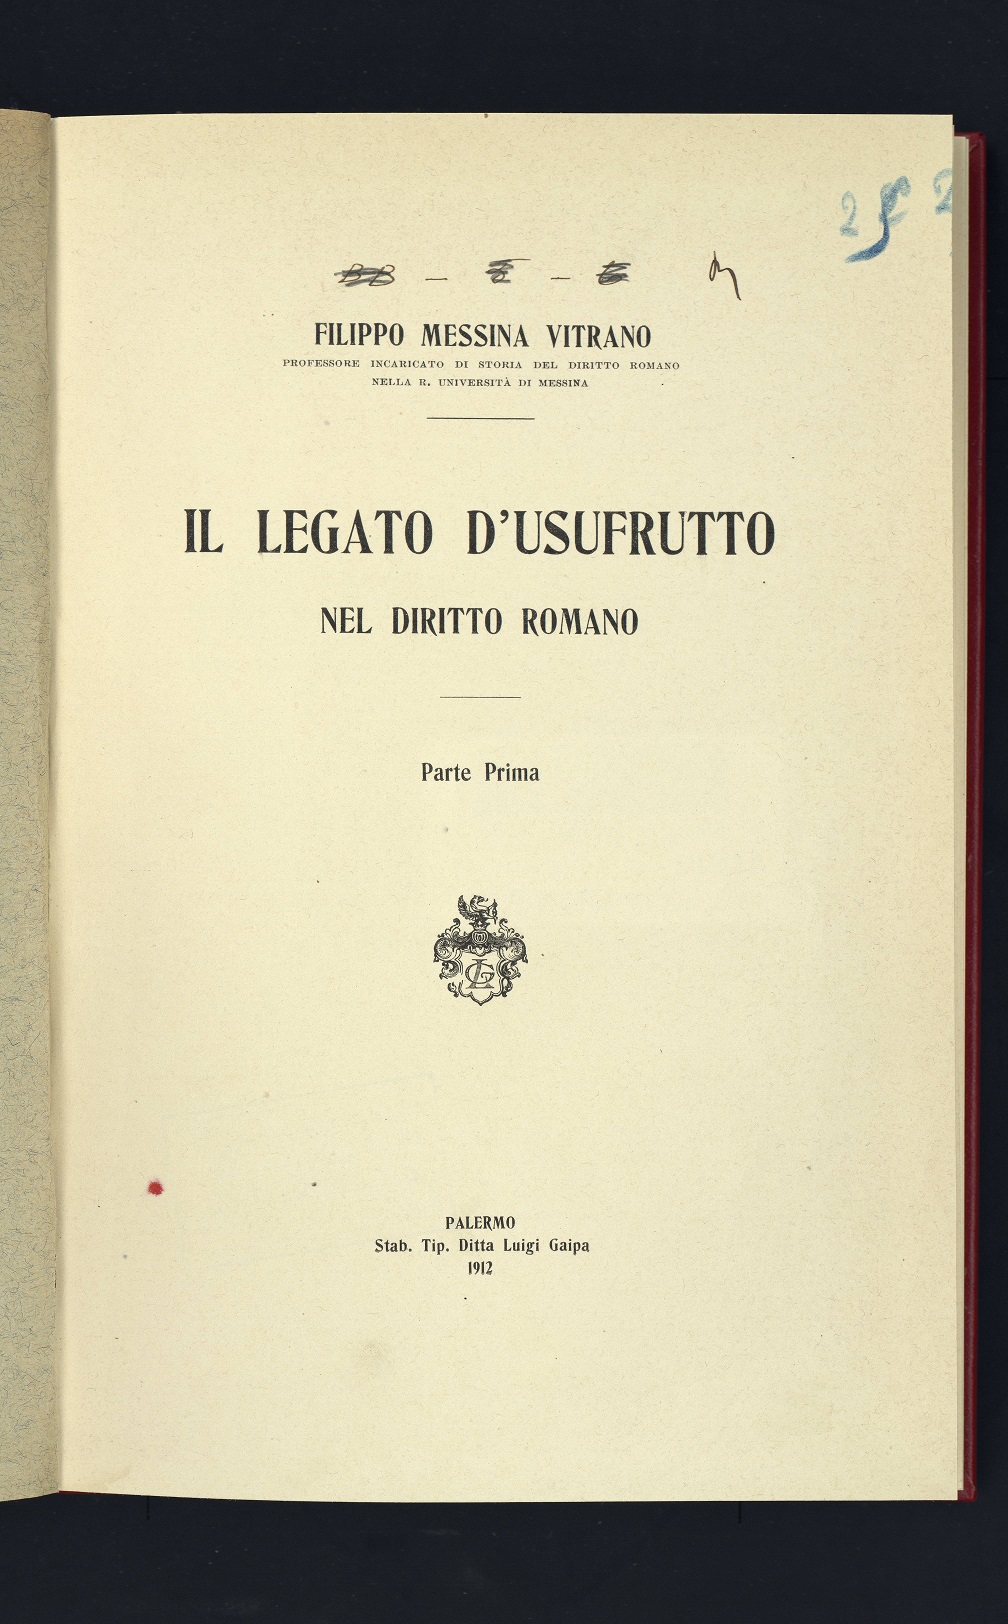 Il legato d'usufrutto nel diritto romano/F. Messina Vitrano - Palermo: Gaipa, 1912